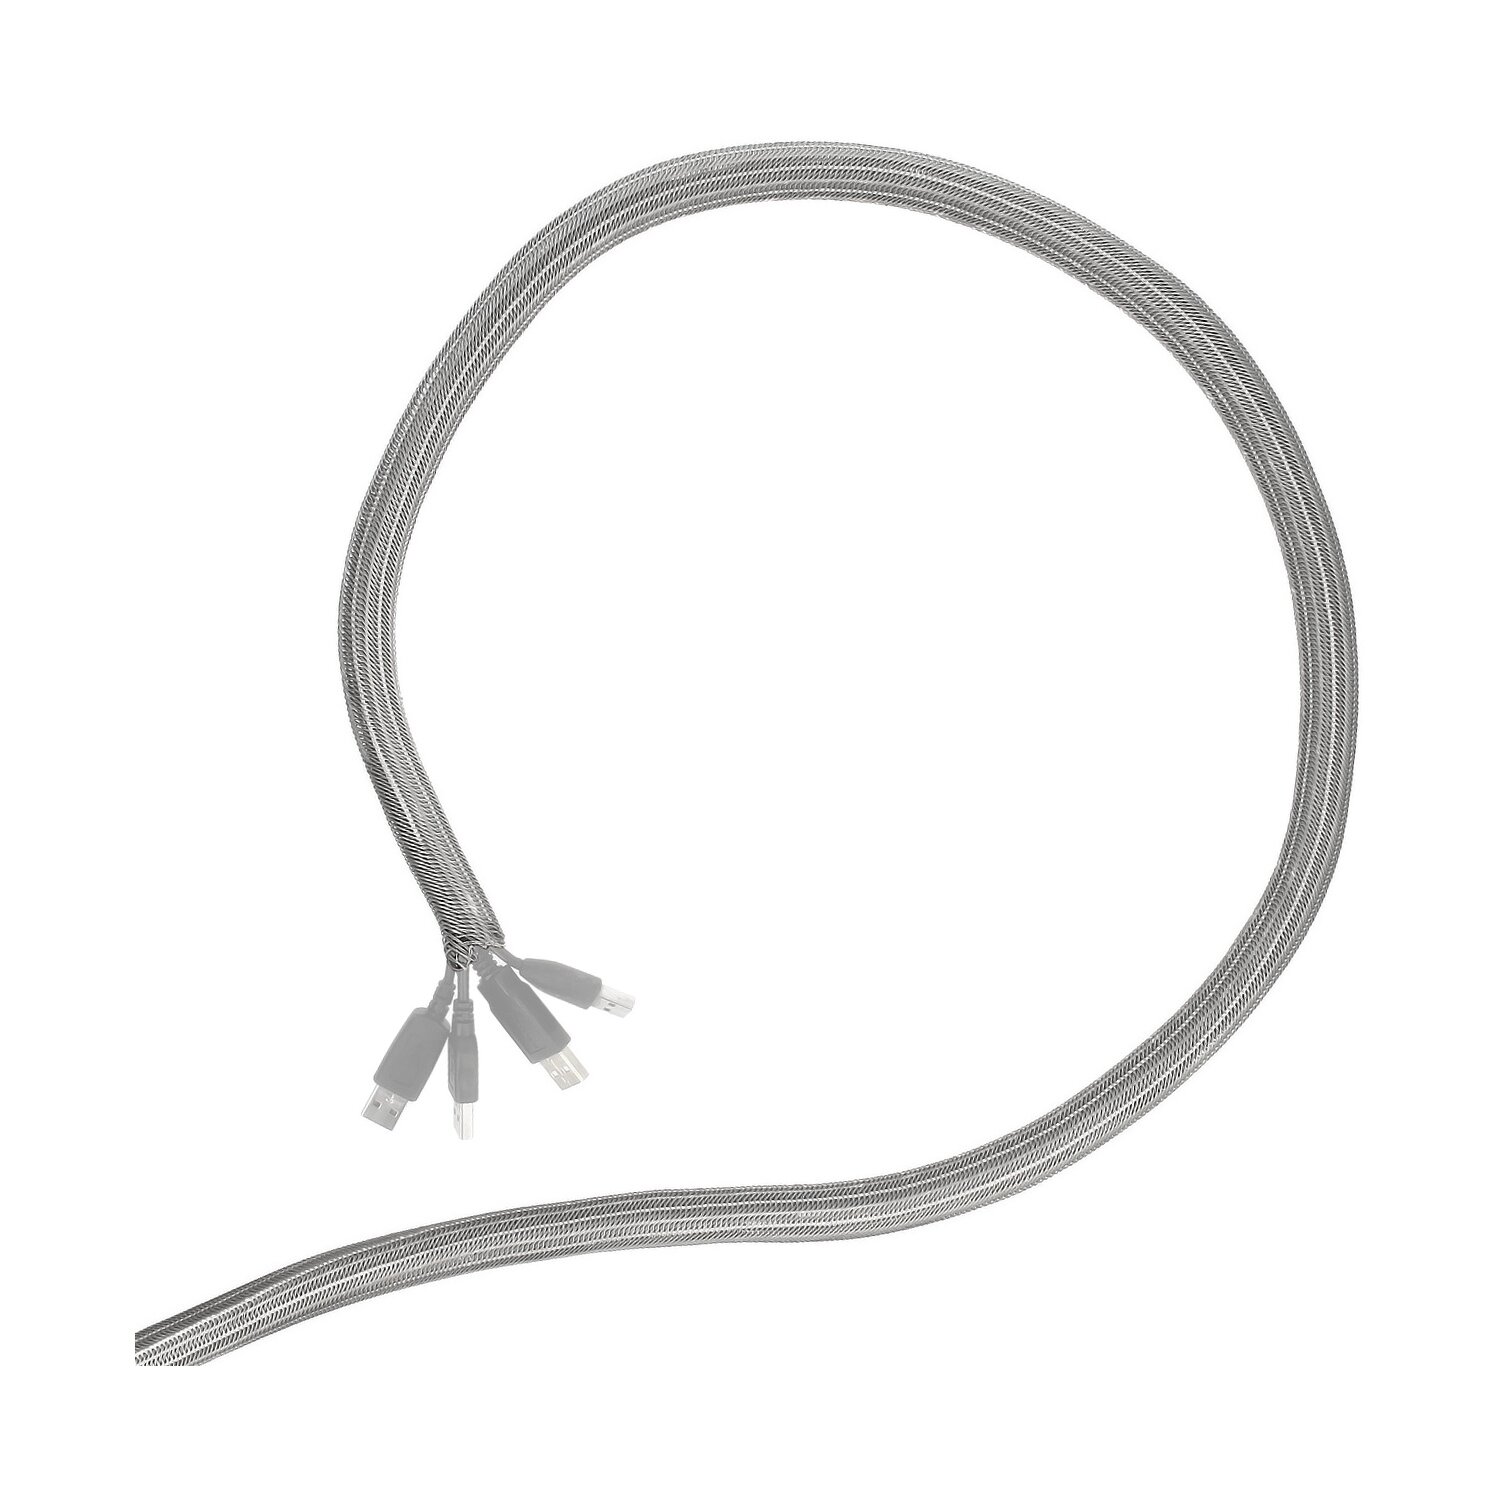 Minadax® gewobener Selbstschließender 2 Meter Profi Kabelschlauch Kabelkanal 16mm Innendurchmesser in grau für flexibles Kabelmanagement